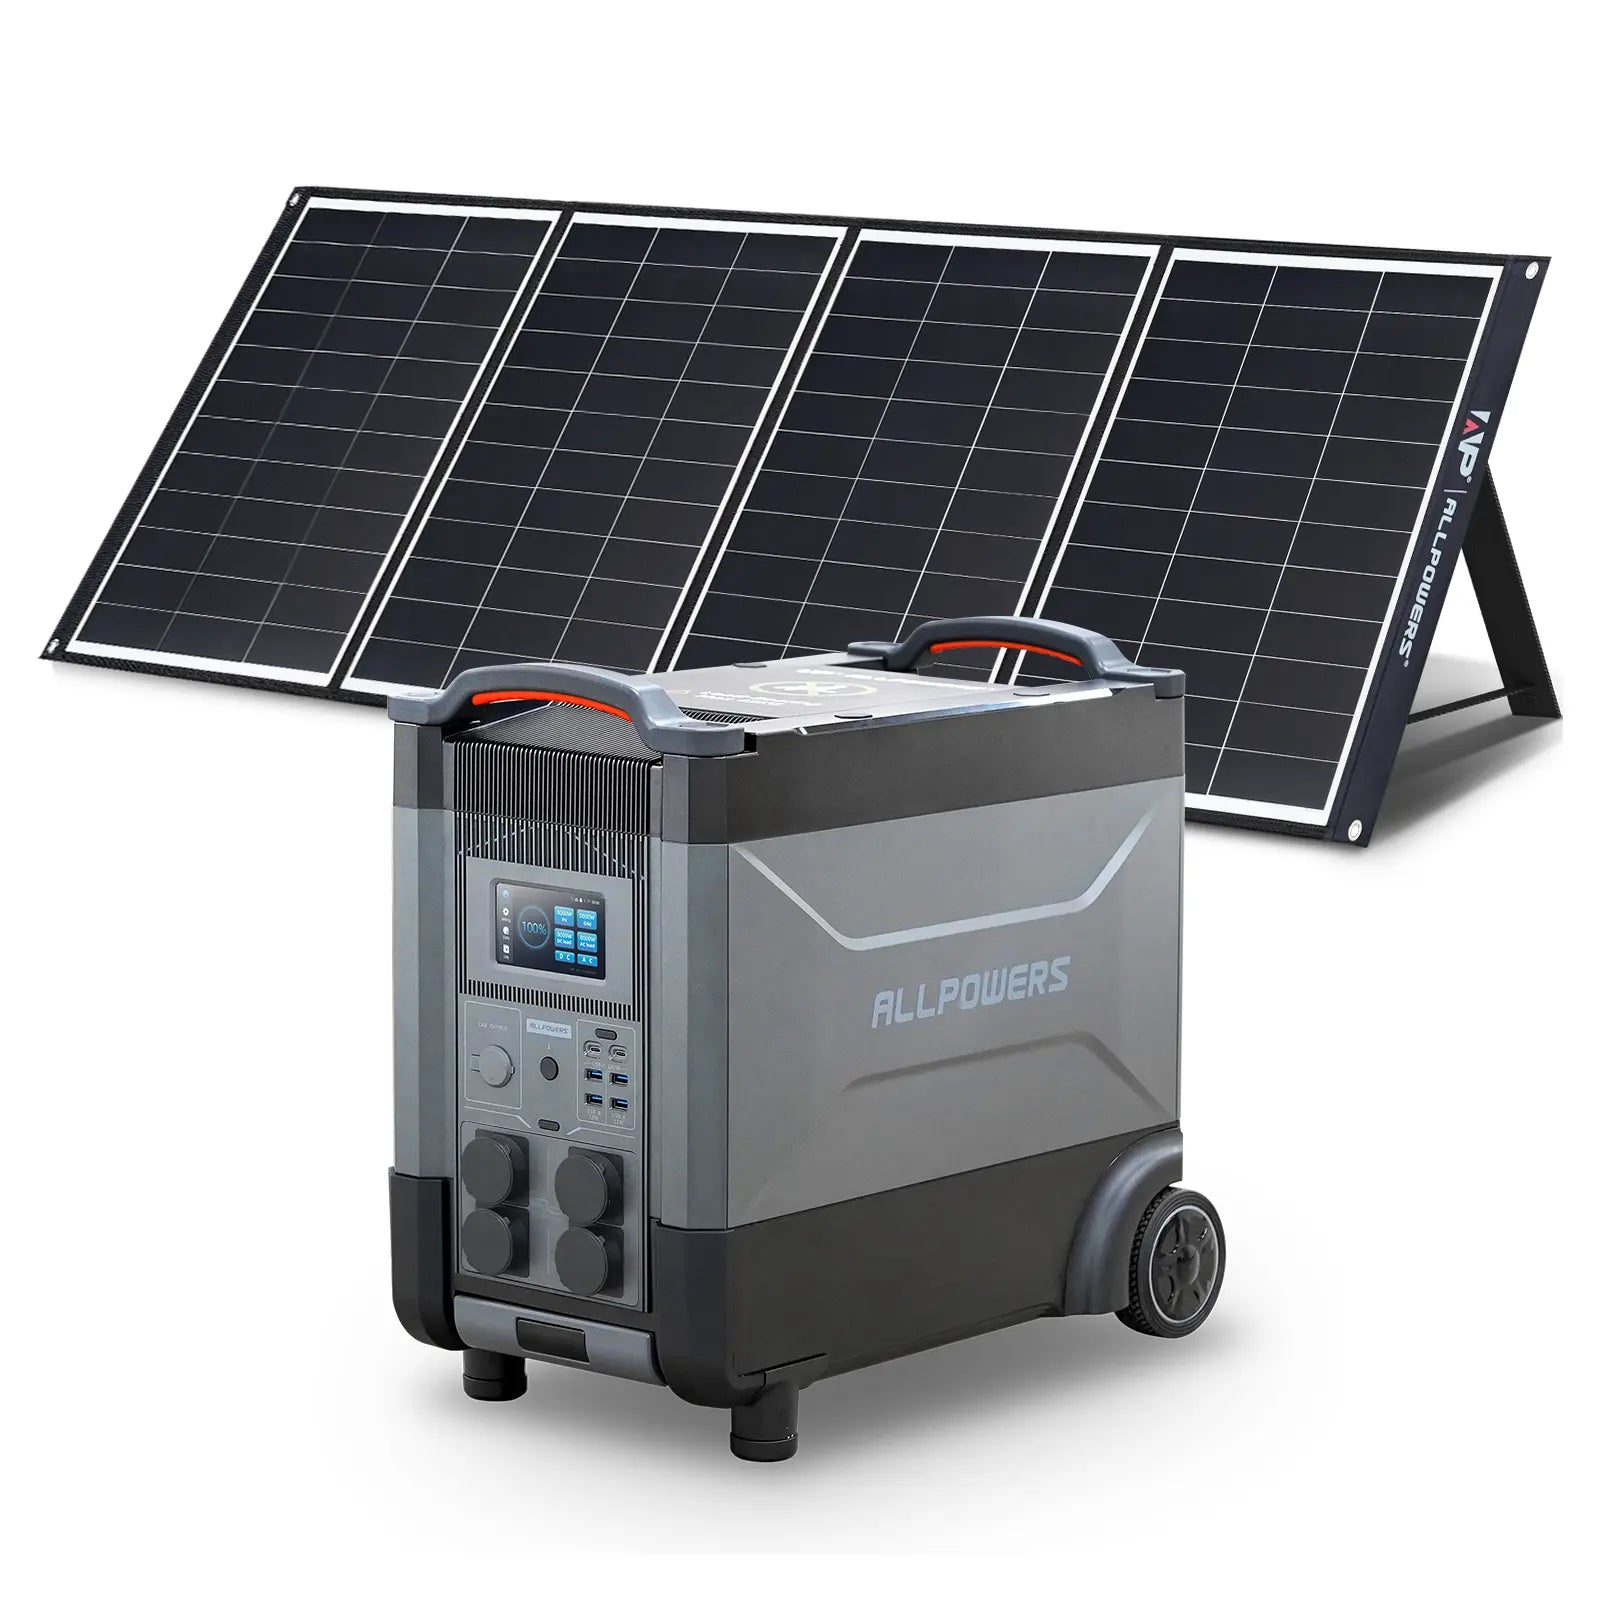 ALLPOWERS 4000W Generatore Solare (R4000 + SP035 200W Pannello Solare)